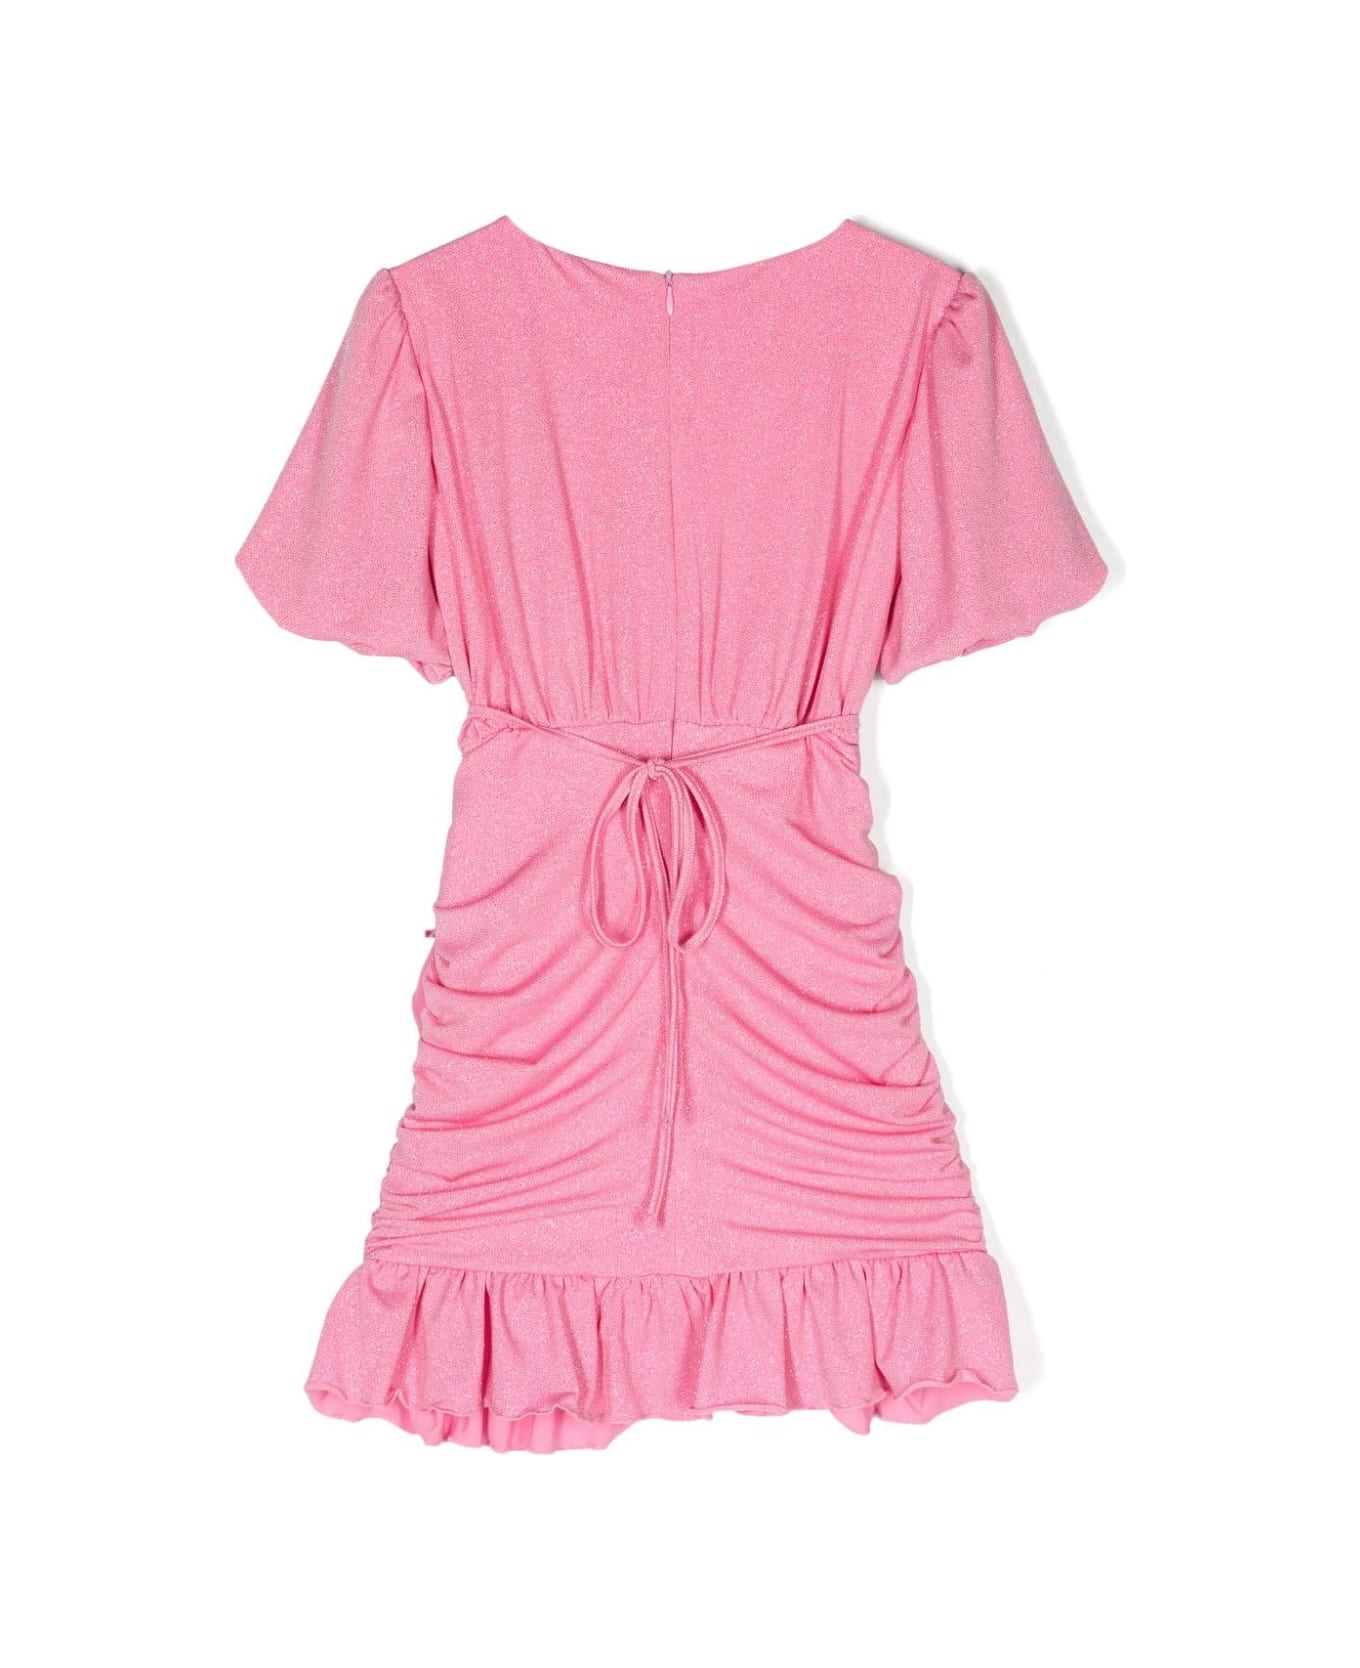 Miss Blumarine Pink Glitter Draped Dress - Pink